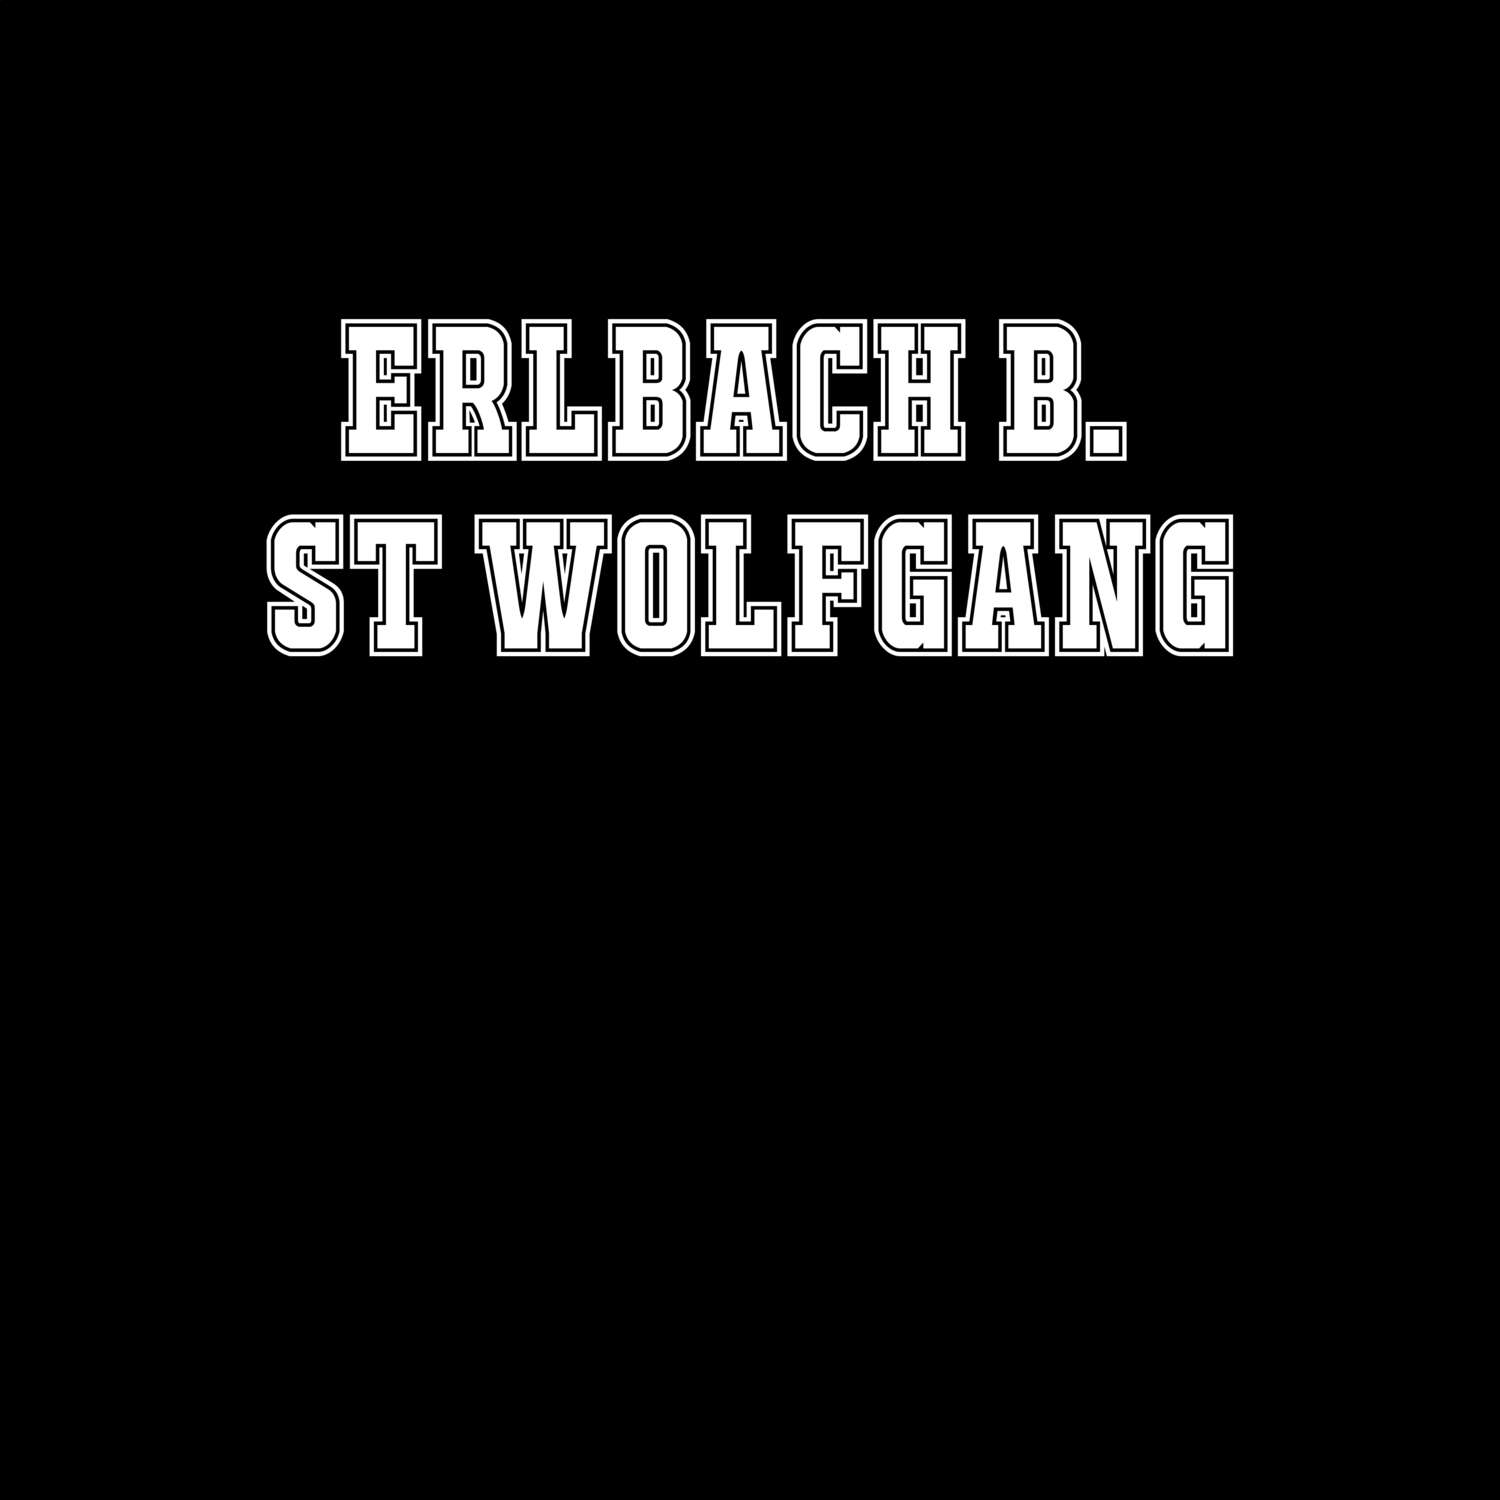 Erlbach b. St Wolfgang T-Shirt »Classic«